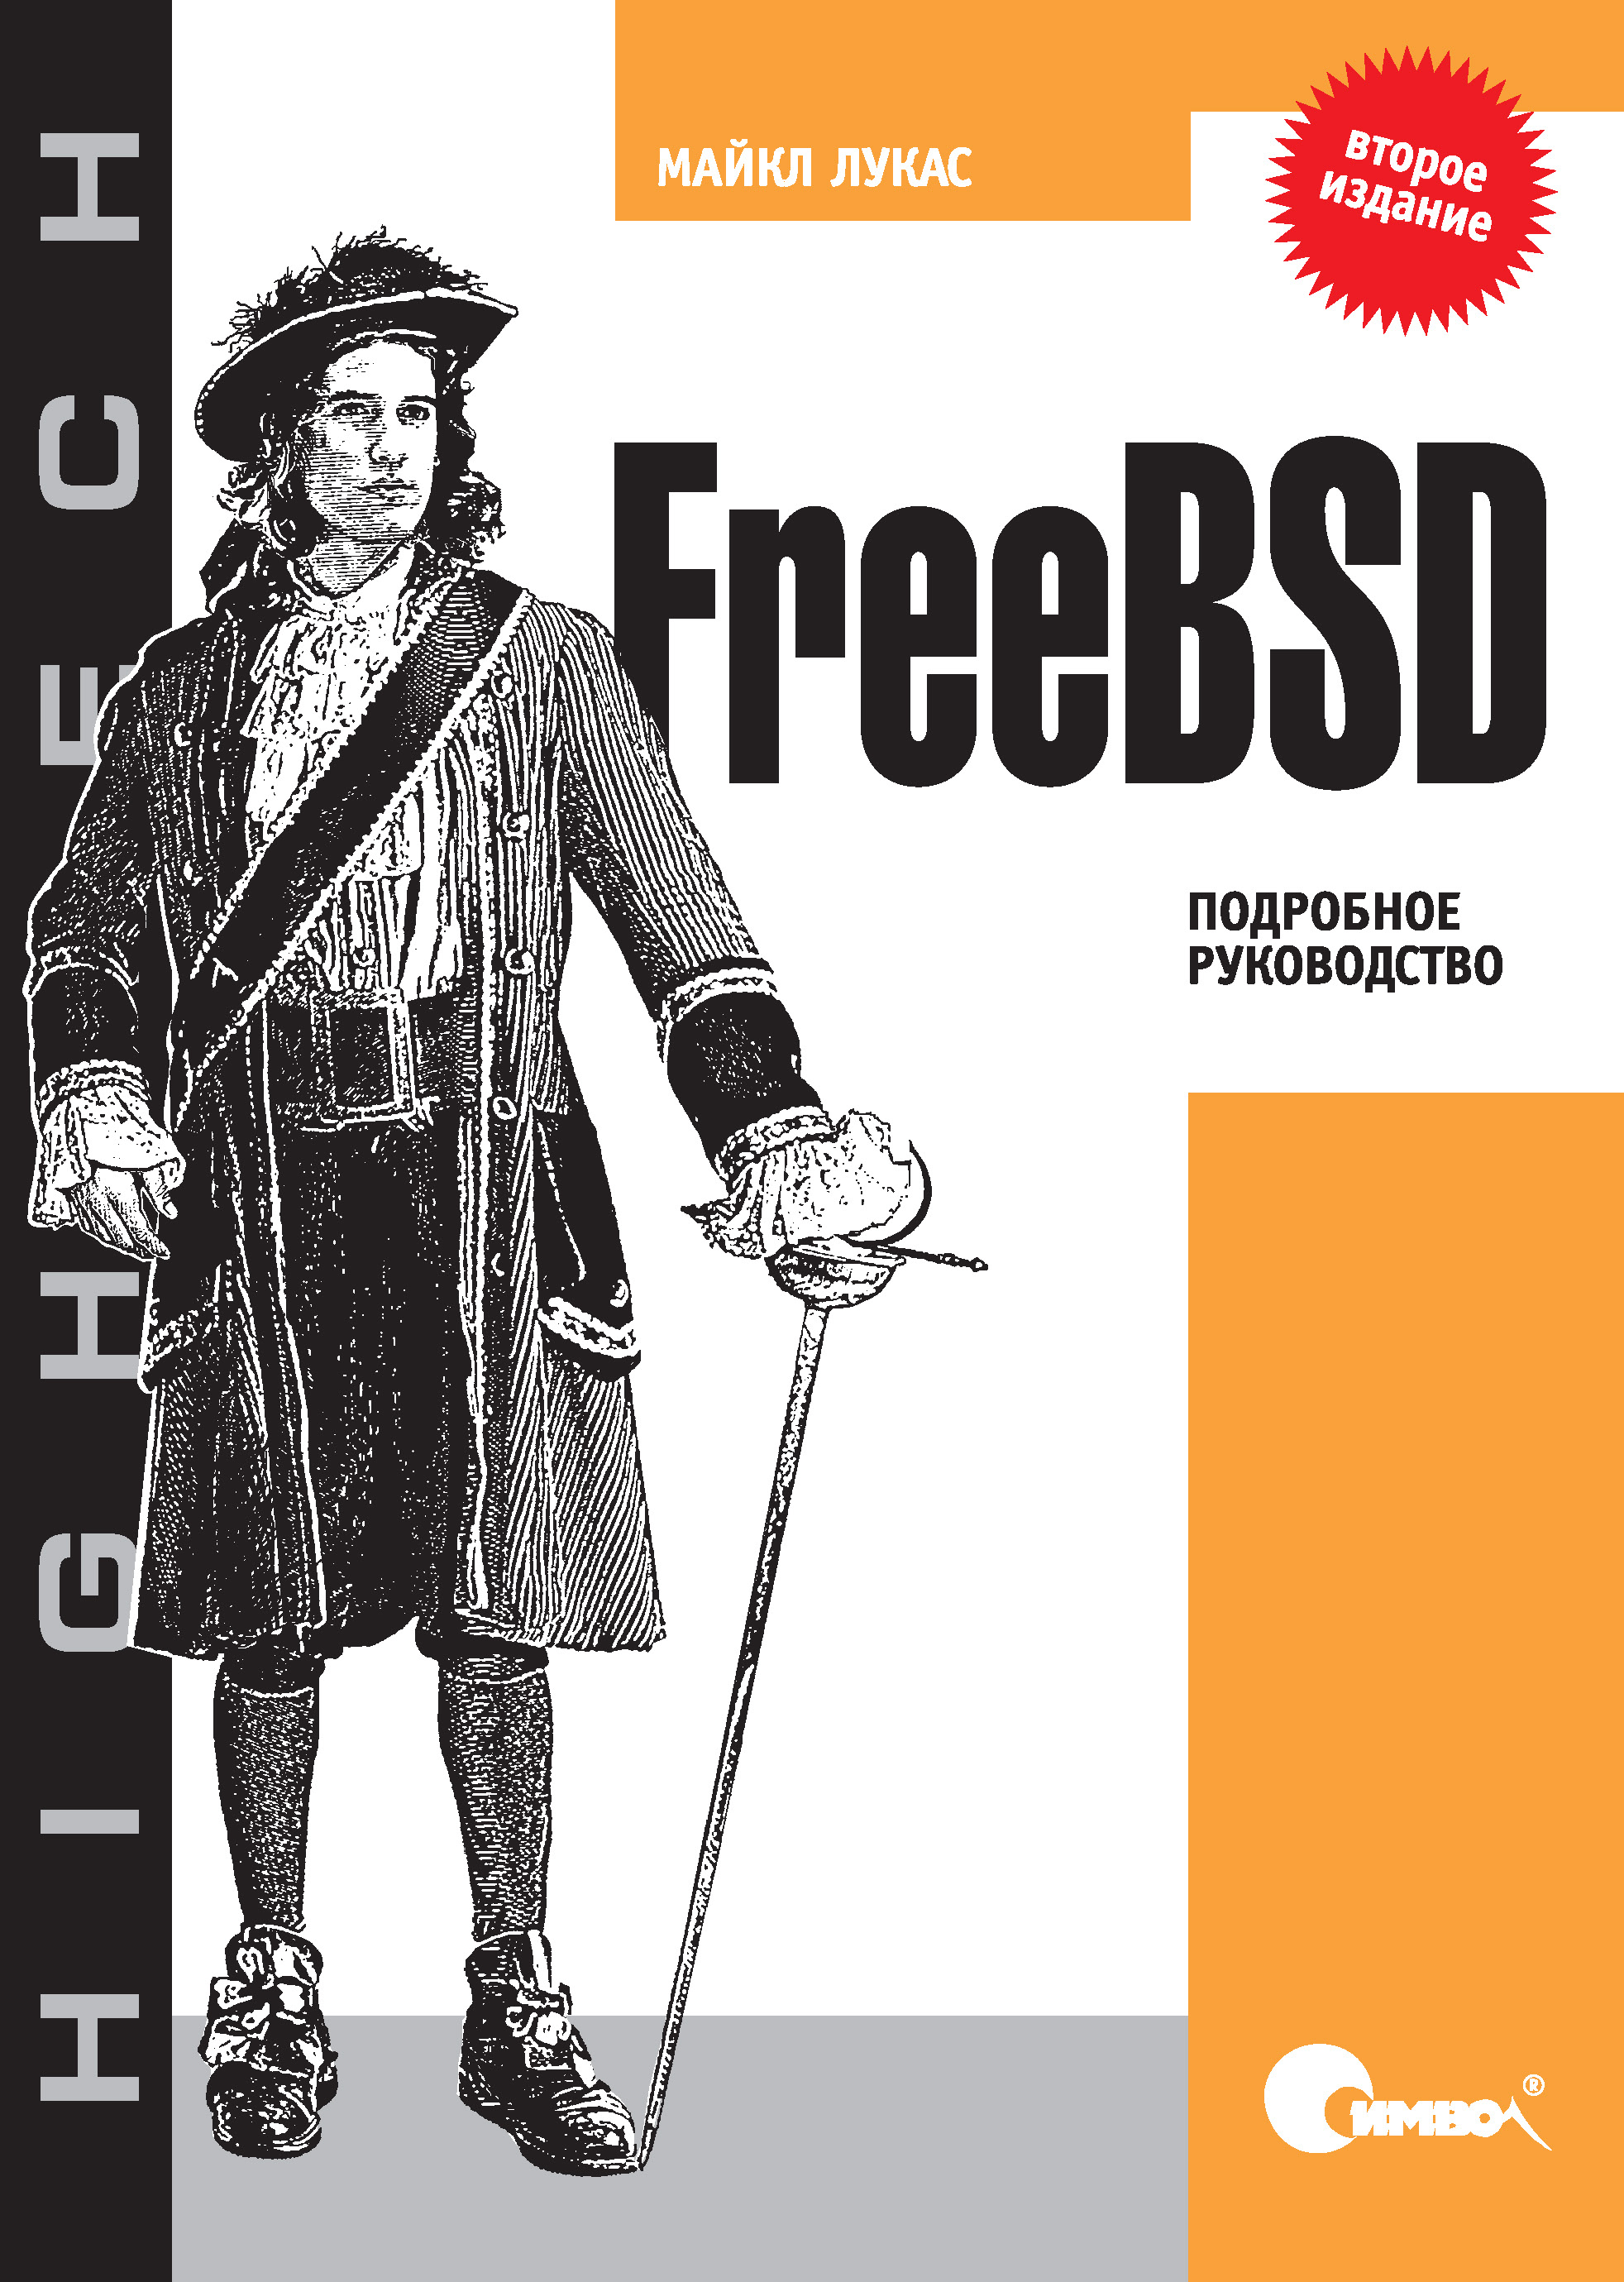 Книга  FreeBSD. Подробное руководство. 2-е издание созданная Майкл Лукас, Александр Киселев может относится к жанру зарубежная компьютерная литература, зарубежная справочная литература, книги о компьютерах, компьютерная справочная литература, ОС и сети, руководства. Стоимость электронной книги FreeBSD. Подробное руководство. 2-е издание с идентификатором 24500494 составляет 490.00 руб.